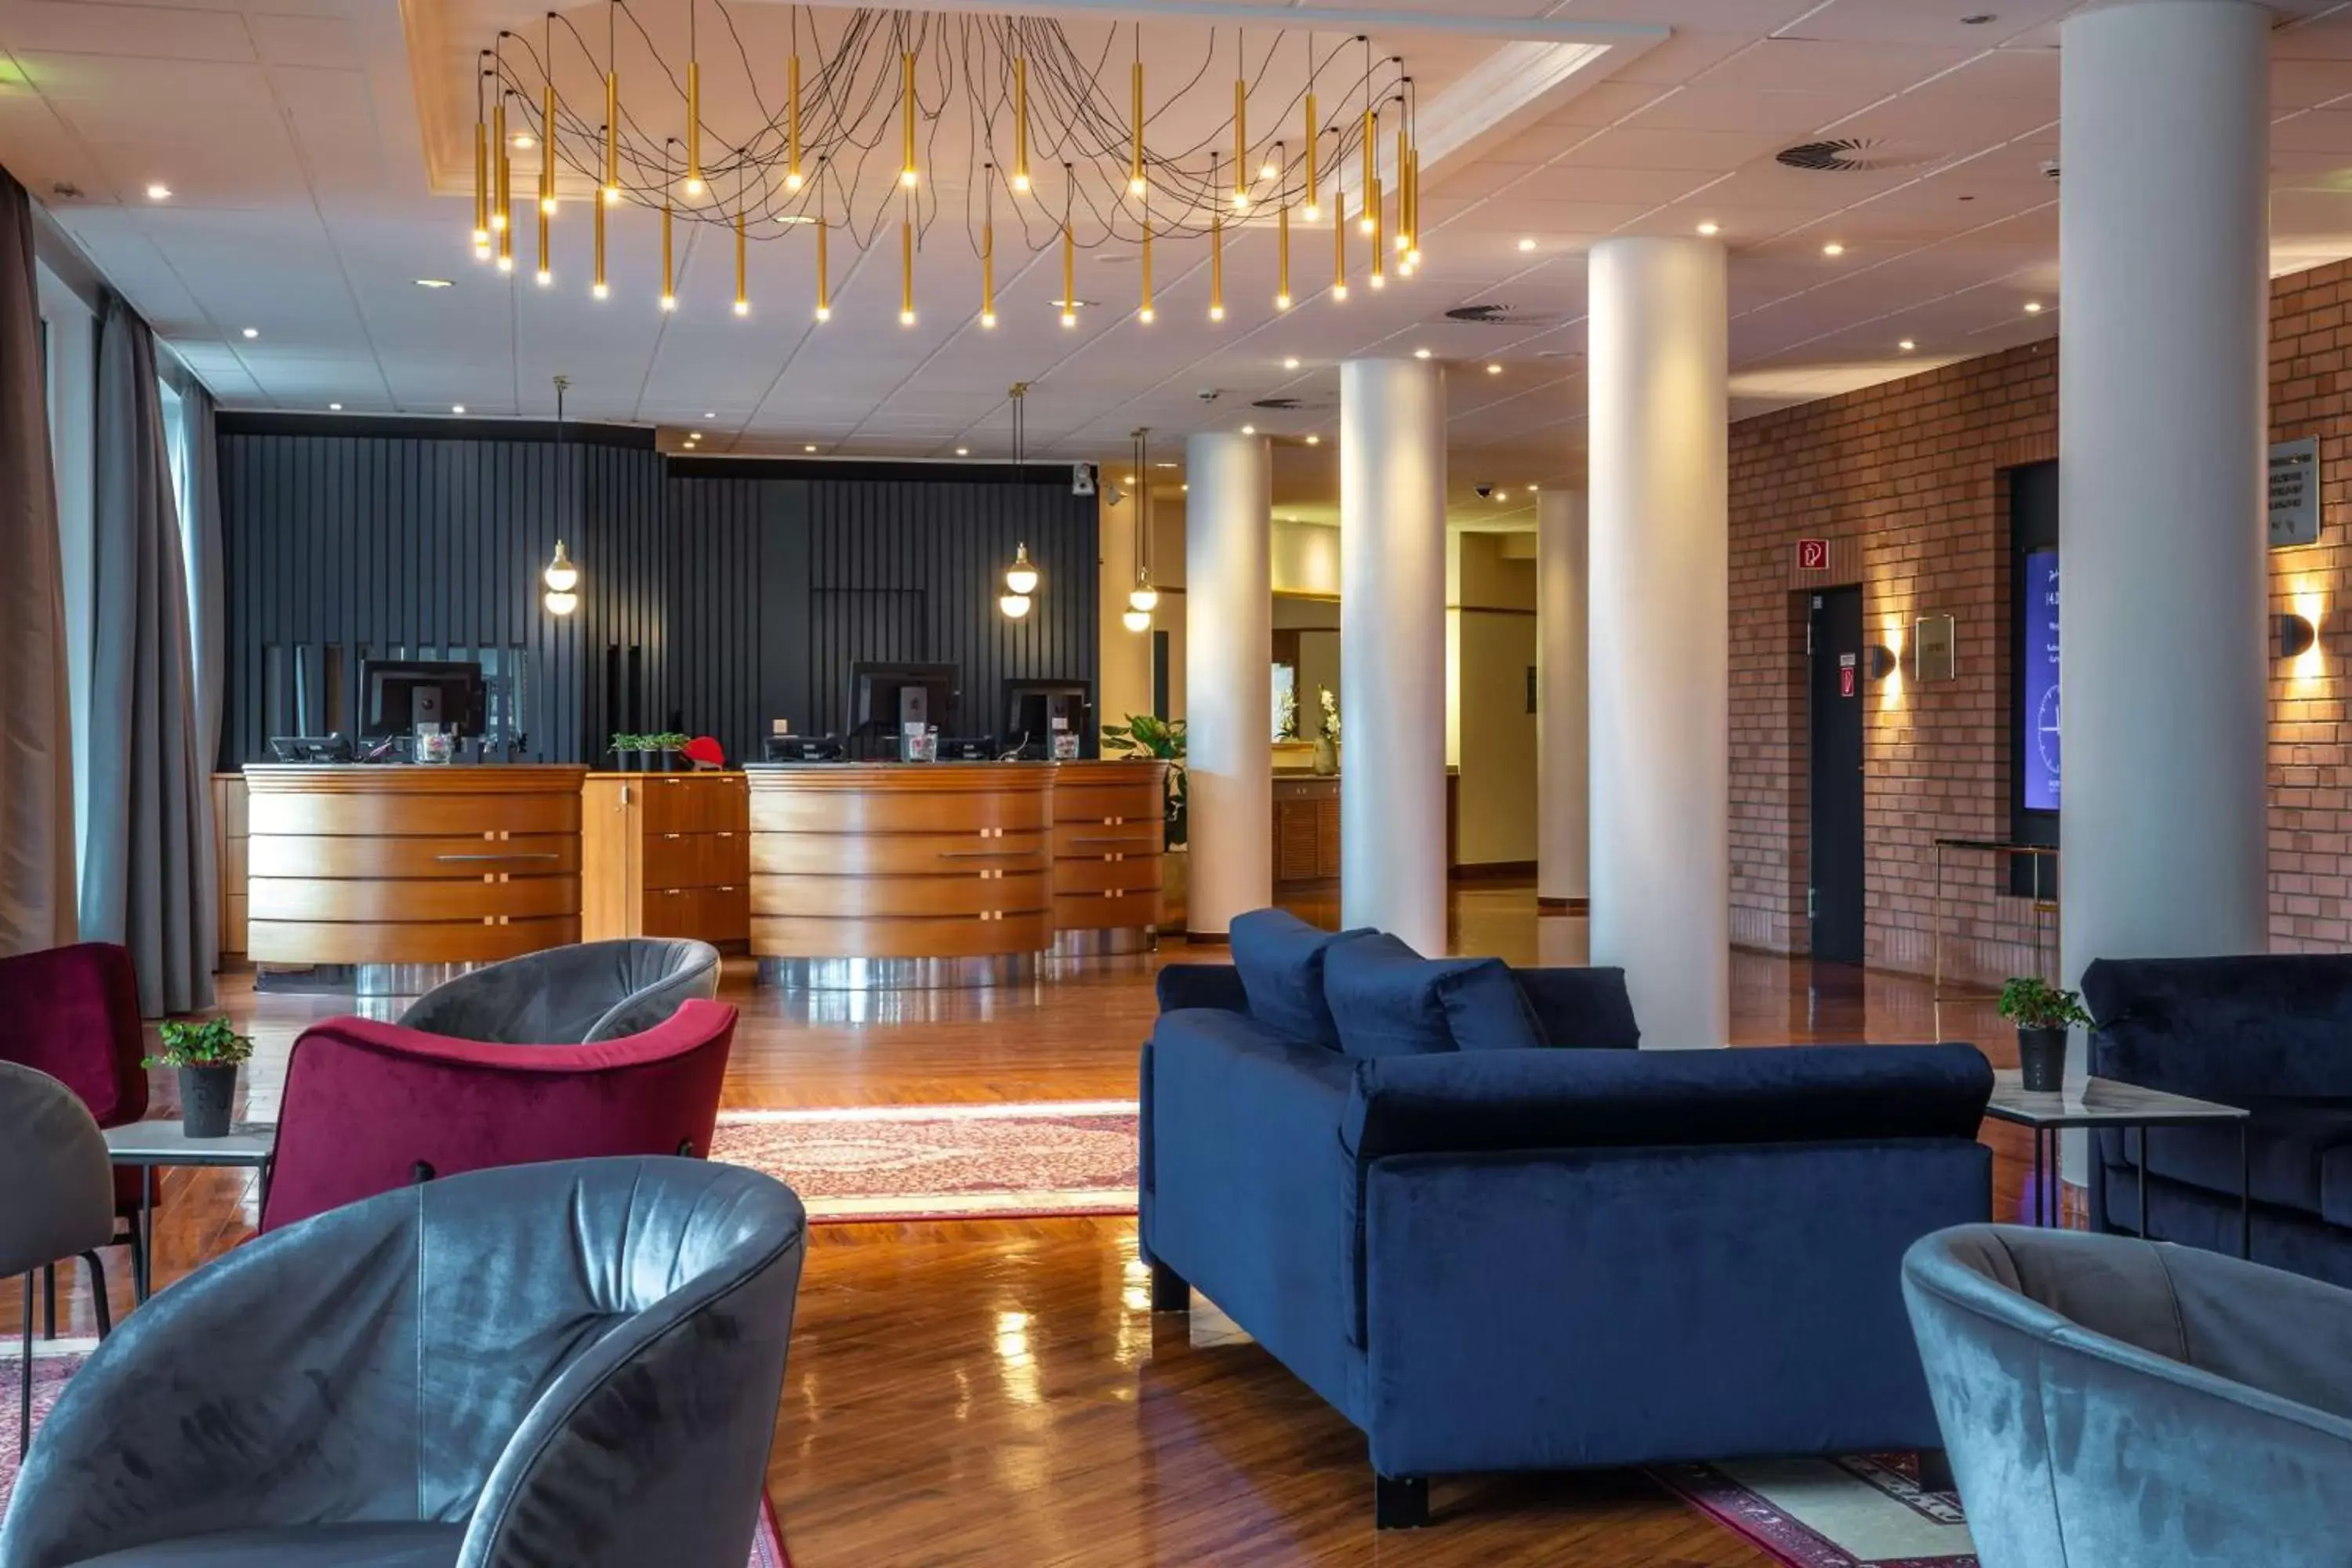 Lobby or reception, Lobby/Reception in Radisson Blu Hotel Karlsruhe